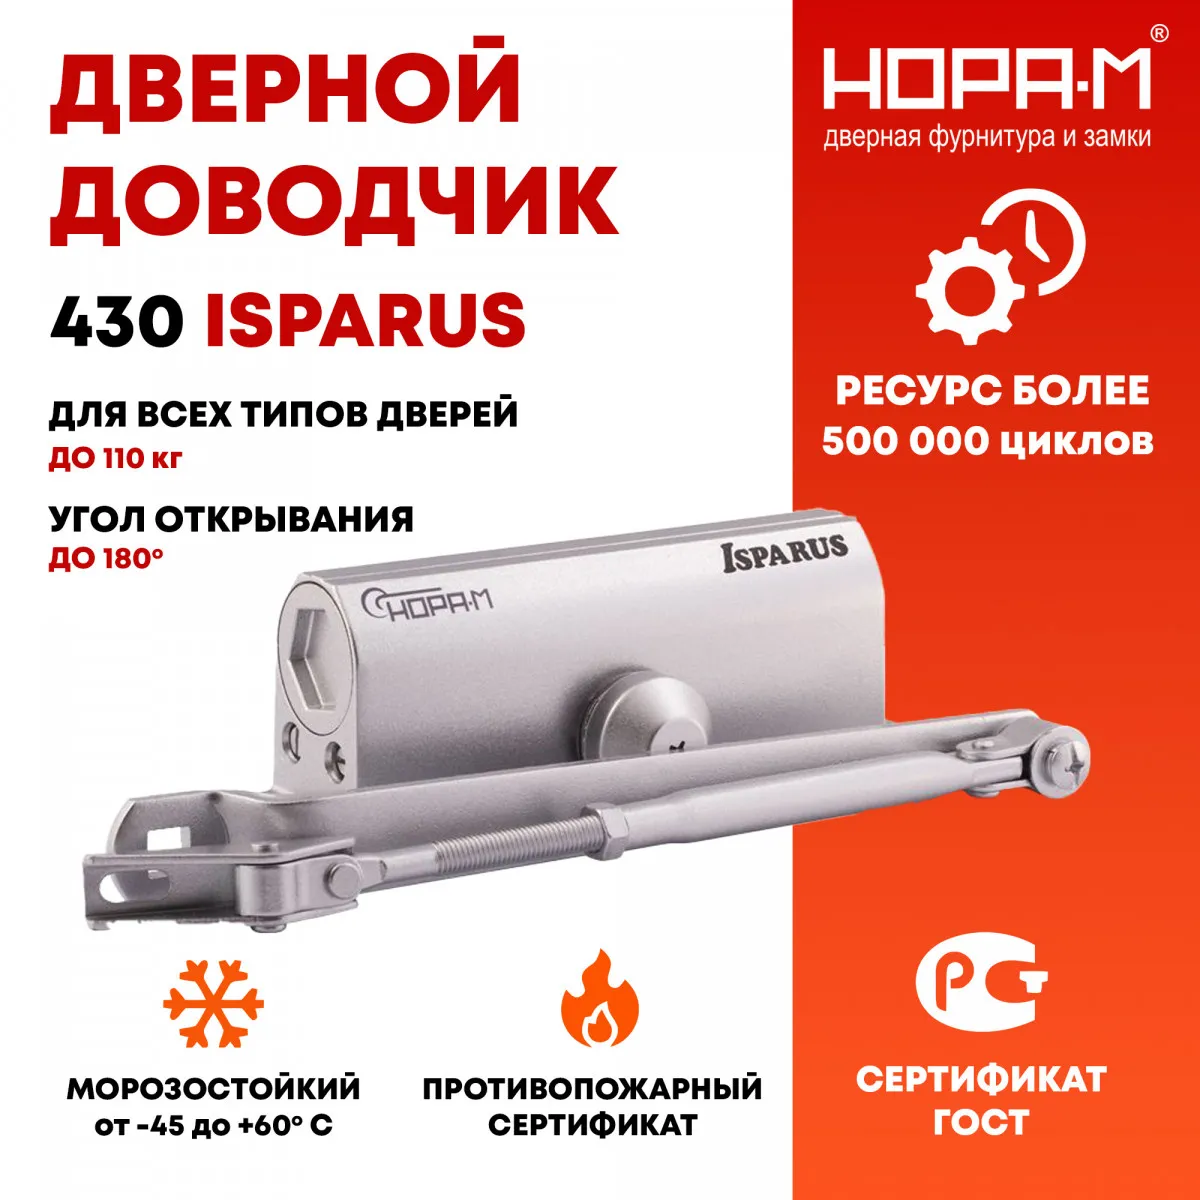 Rossiyaning NORA M kompaniyasidan 50 dan 110 kg gacha bo'lgan eshikni yopishtiruvchi 430 ISPARUS#1